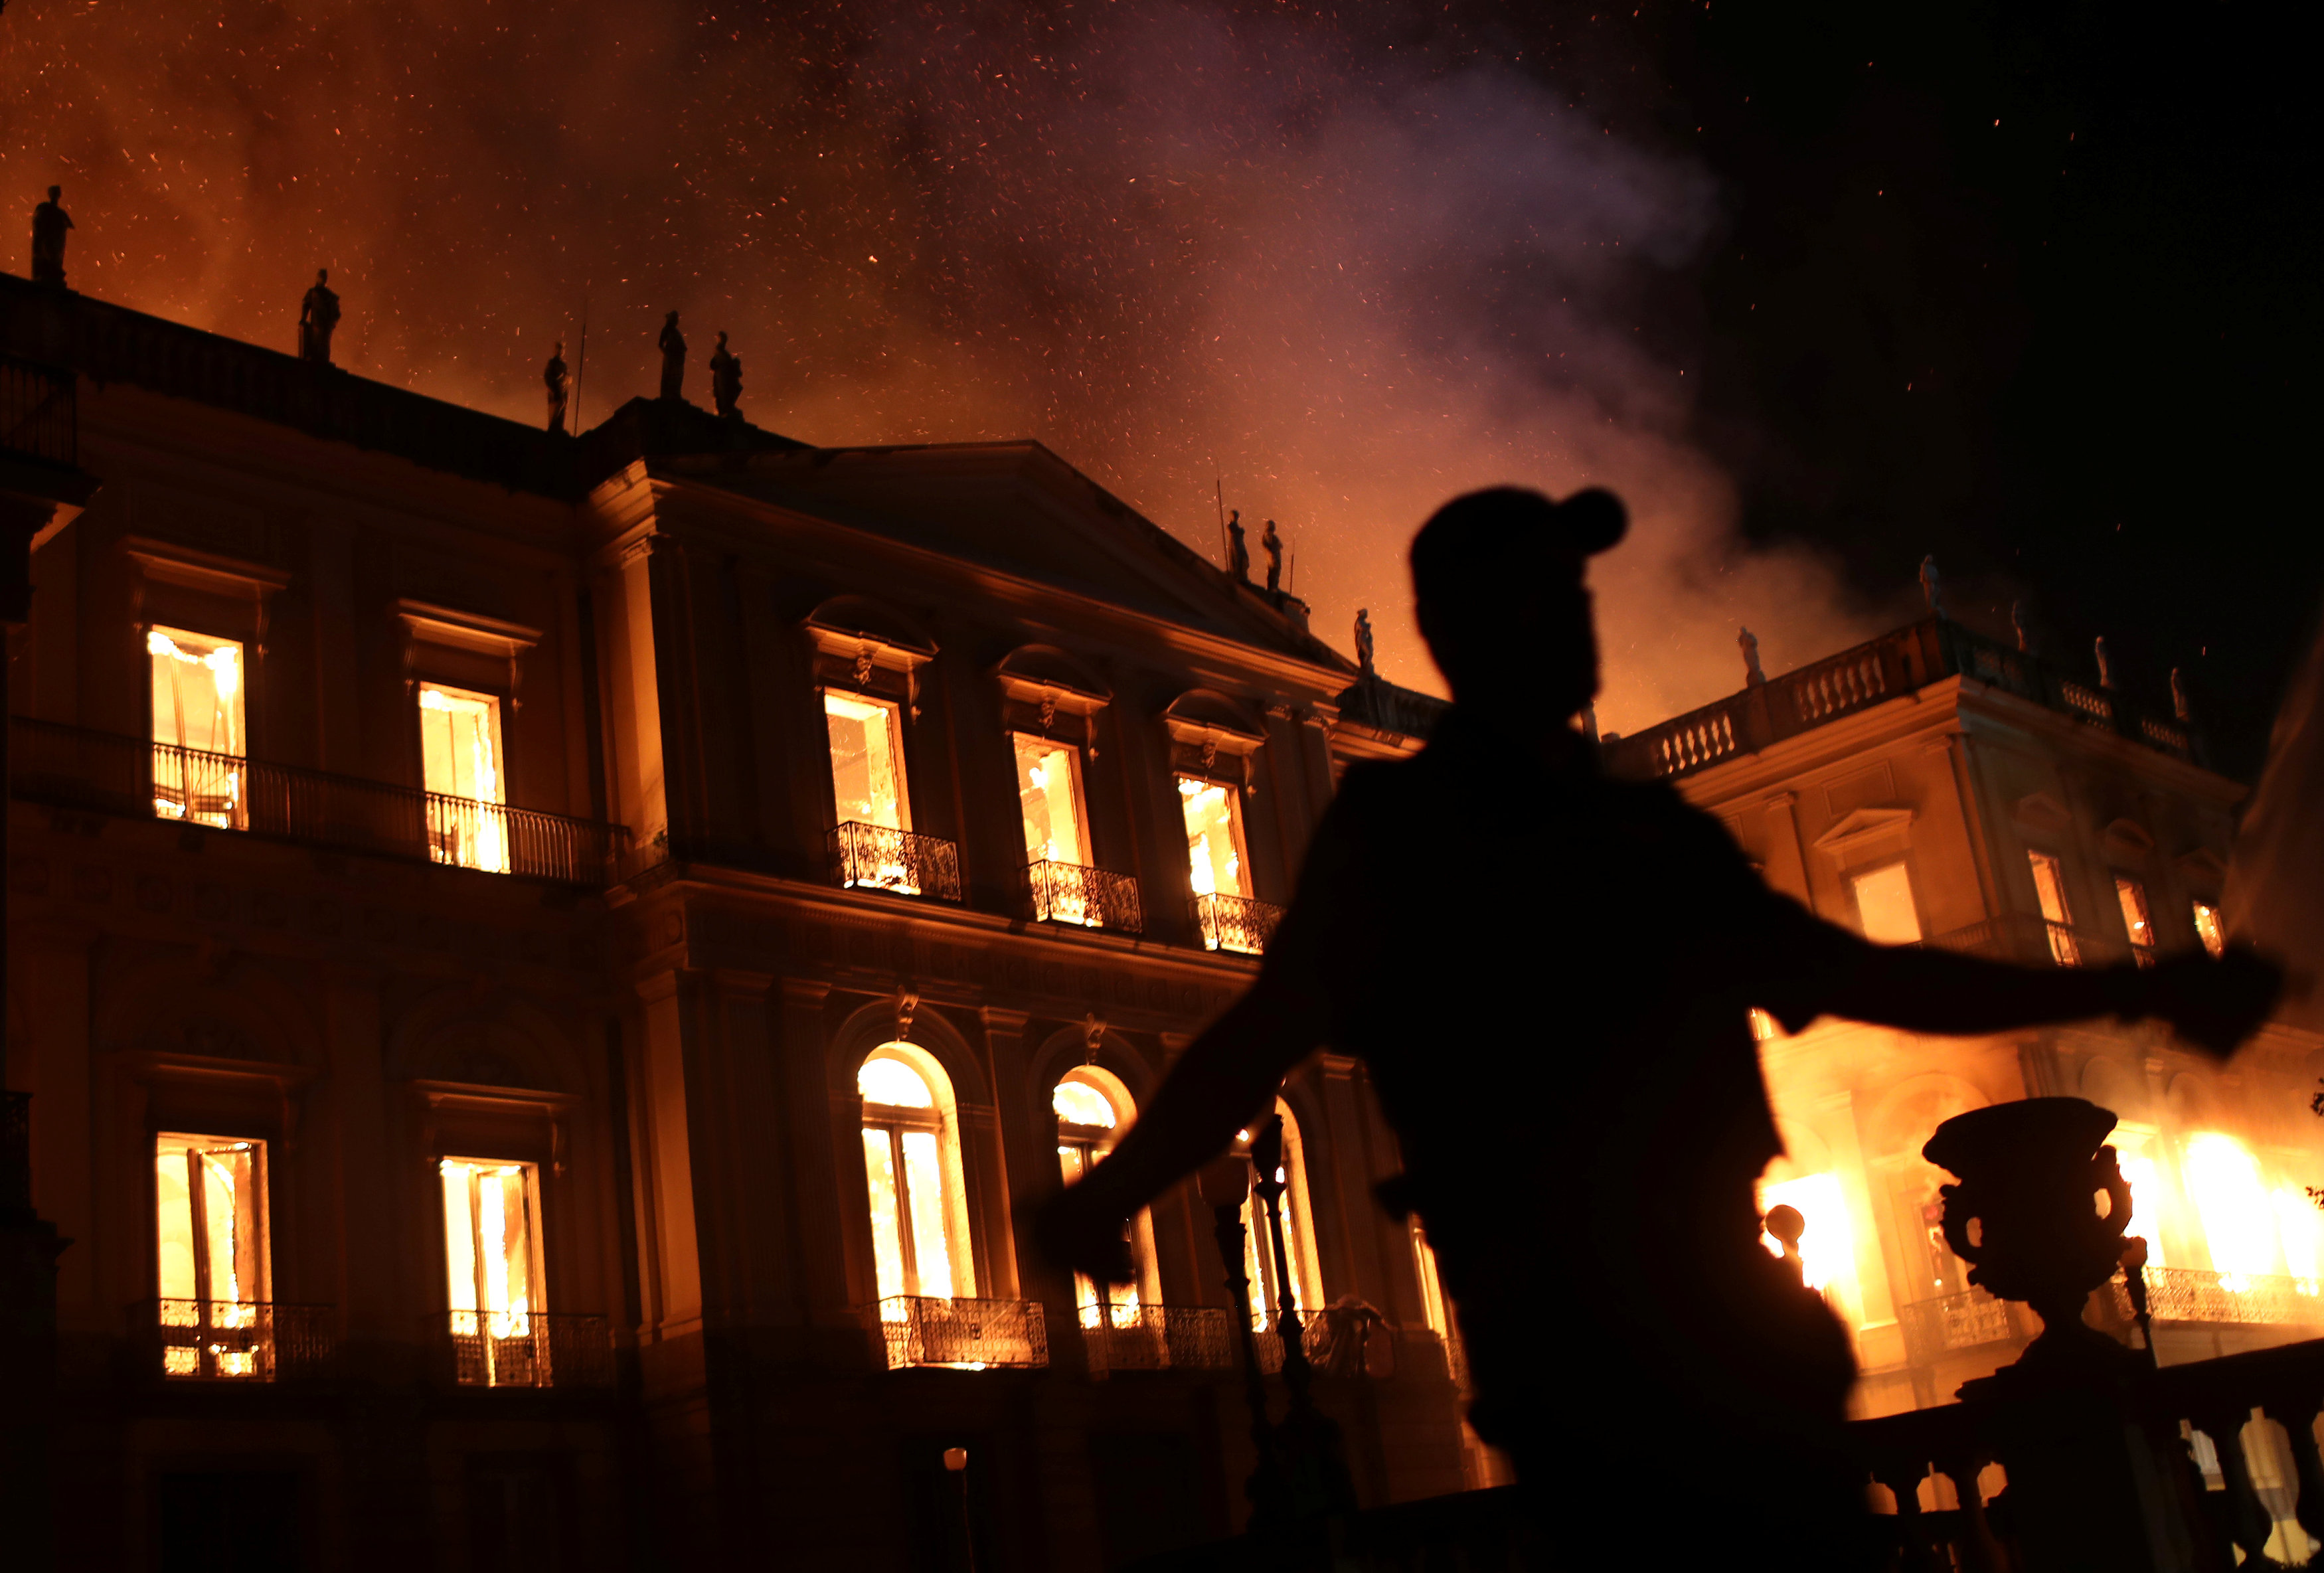 Η ανθρωπότητα έγινε φτωχότερη – Το Εθνικό Μουσείο του Ρίο ντε Τζανέιρο έγινε παρανάλωμα του πυρός